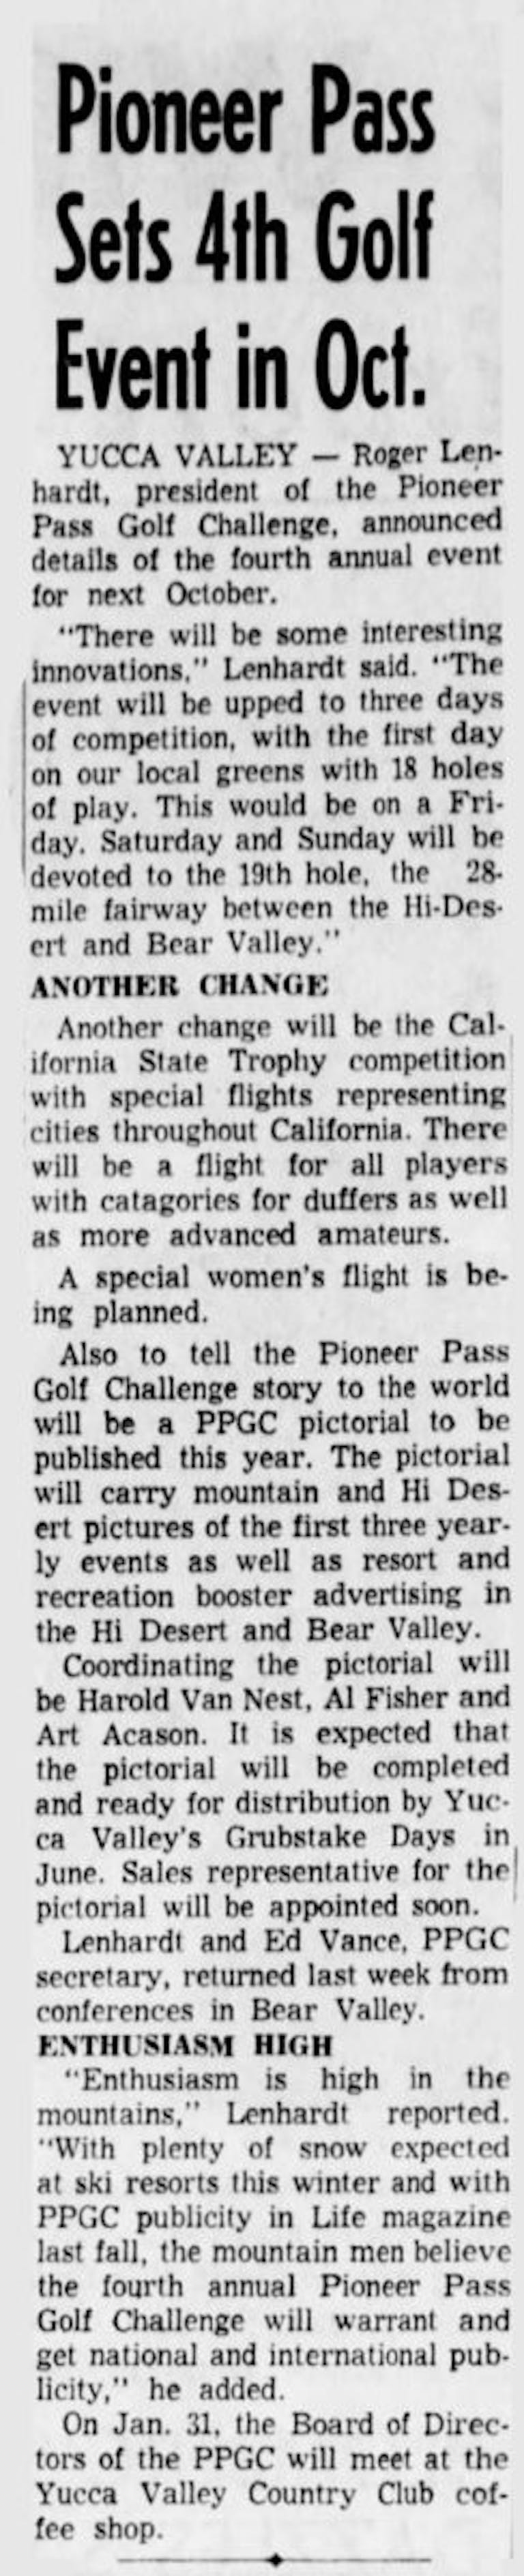 Jan. 10, 1962 - The San Bernardino County Sun